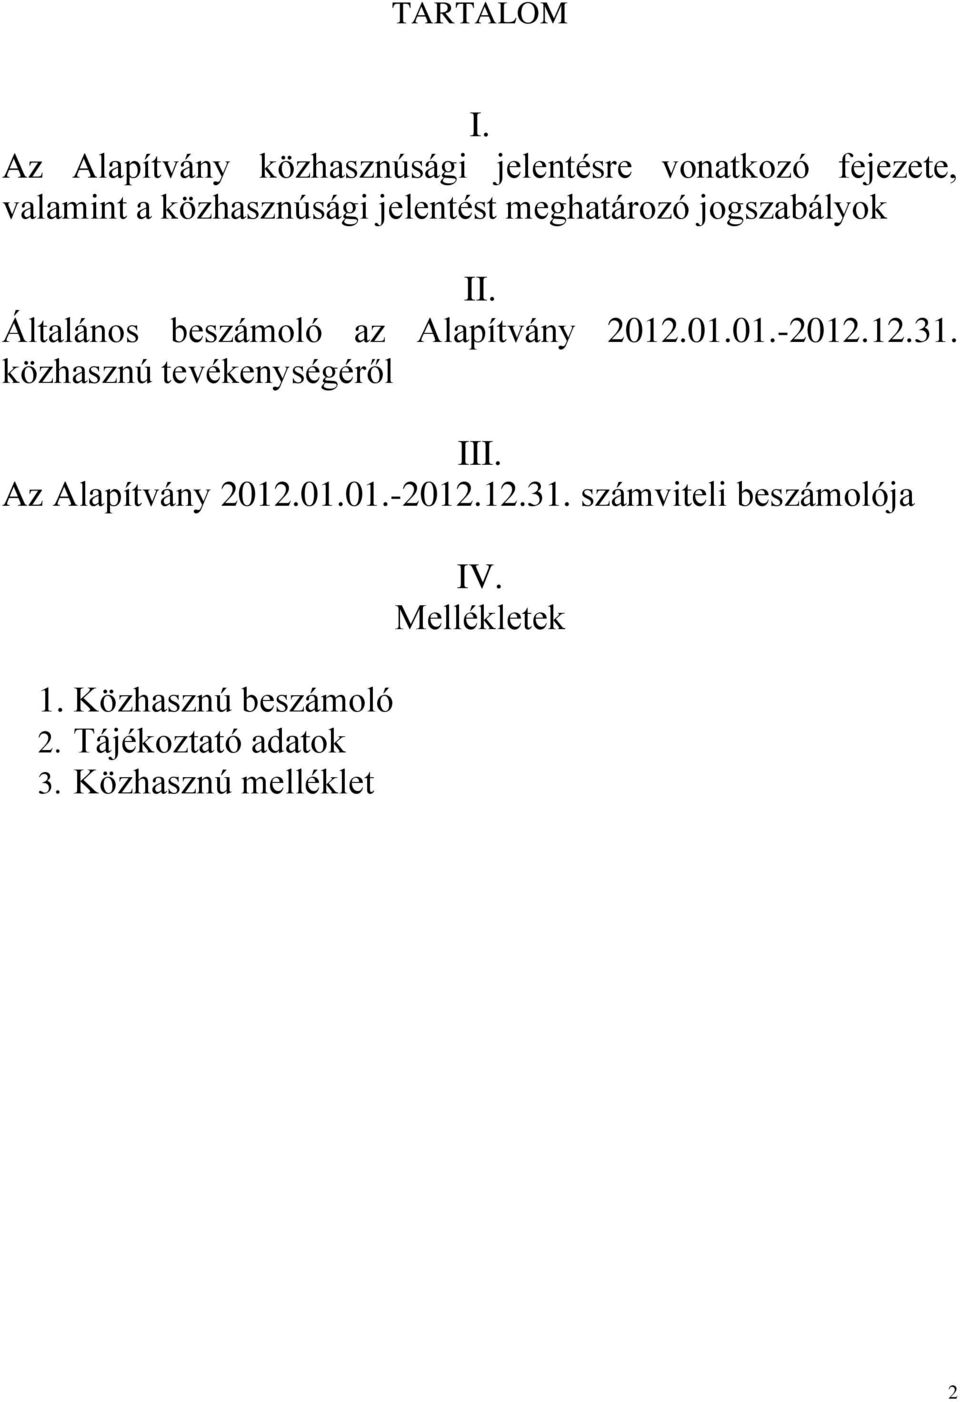 jelentést meghatározó jogszabályok II. Általános beszámoló az Alapítvány 2012.01.01.-2012.12.31.